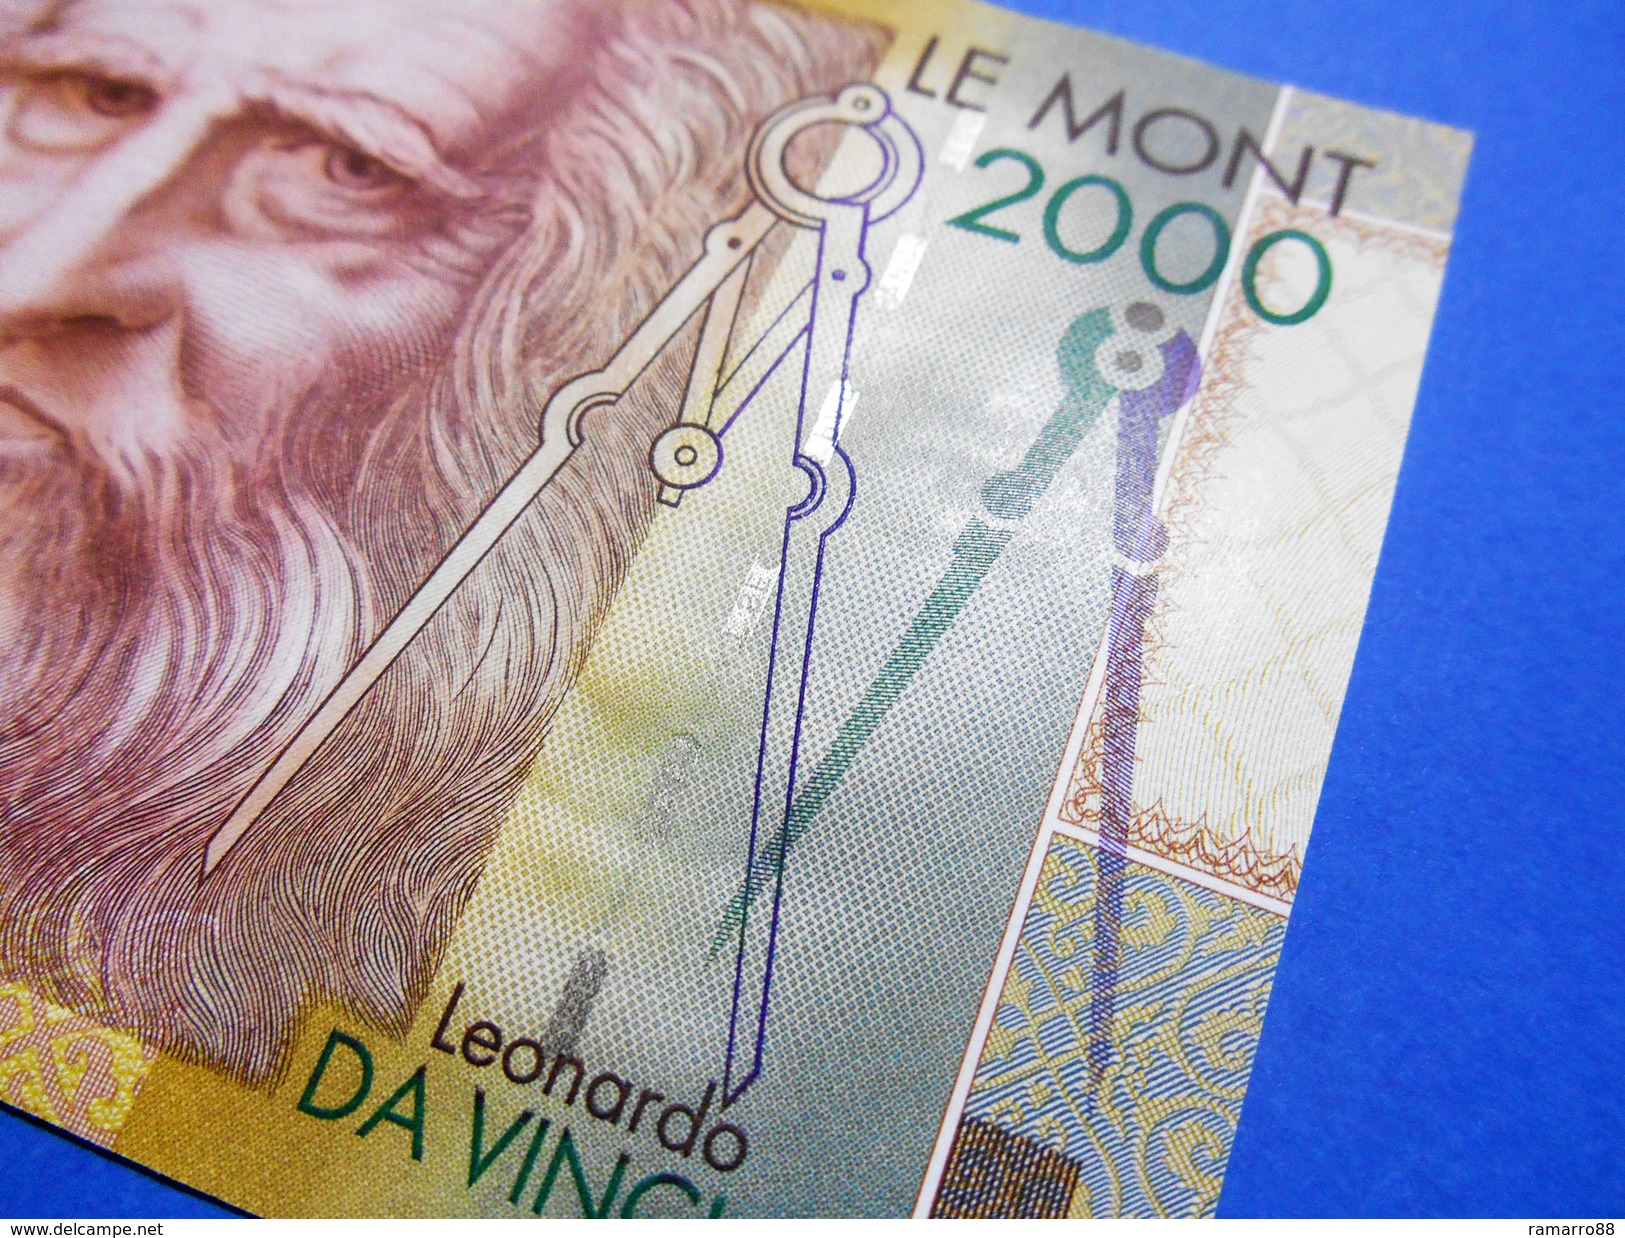 De La Rue Giori Leonardo Da Vinci Le Mont 2000 Specimen Test Note Unc 